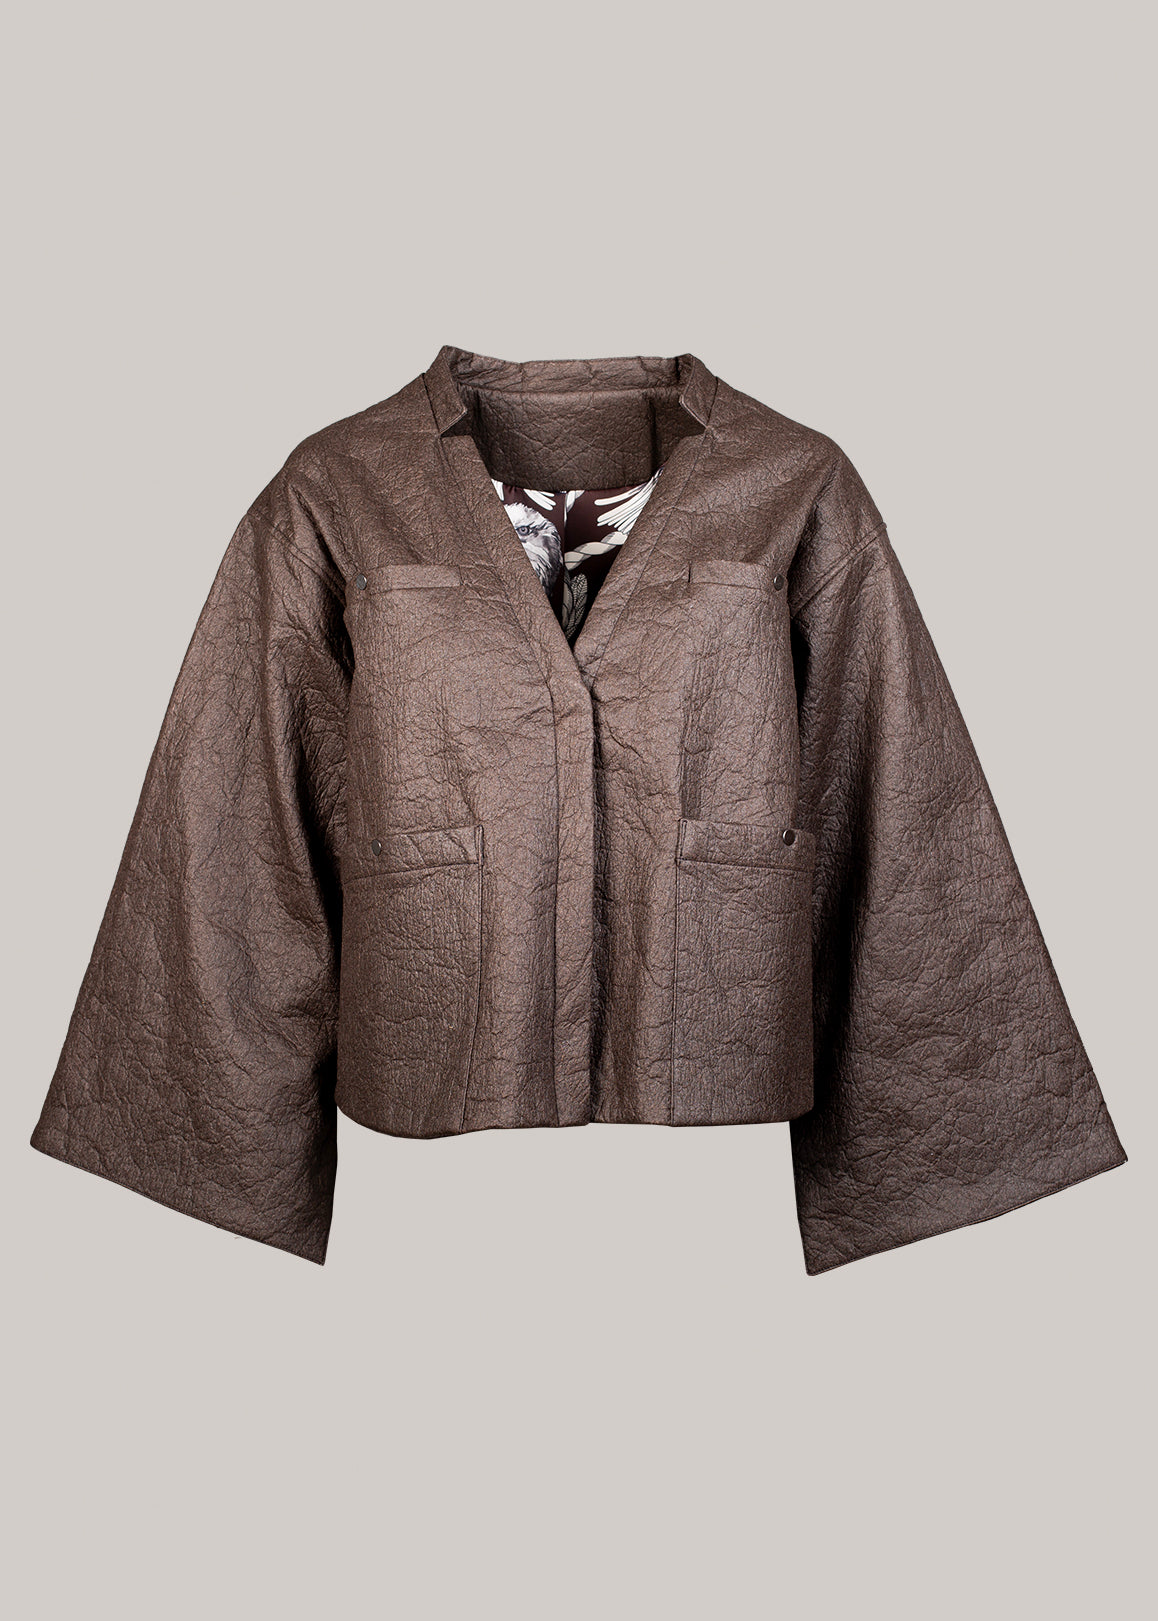 Almadine - Vegan leather jacket